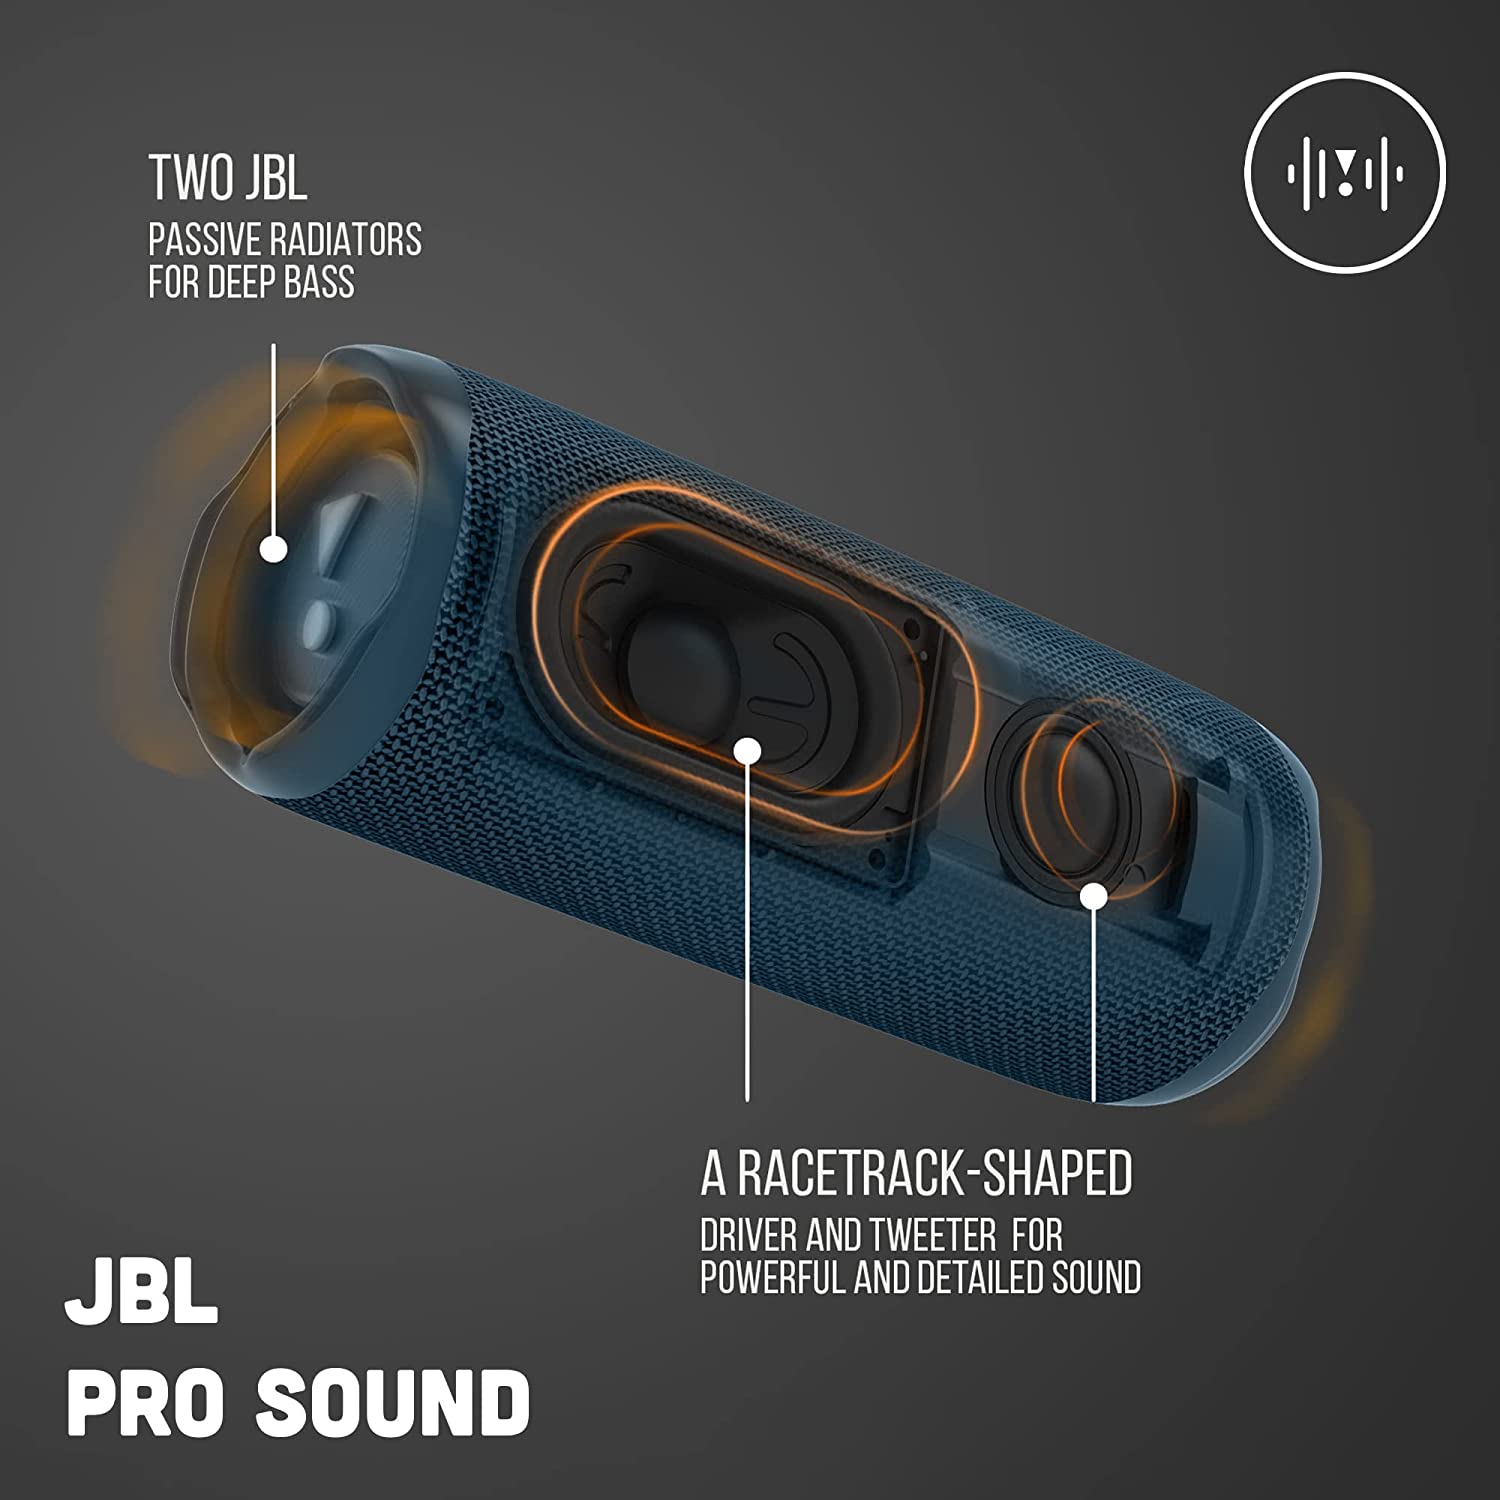 JBL FLIP 6 PINK Bluetooth Speaker Pink Waterproof Powerful